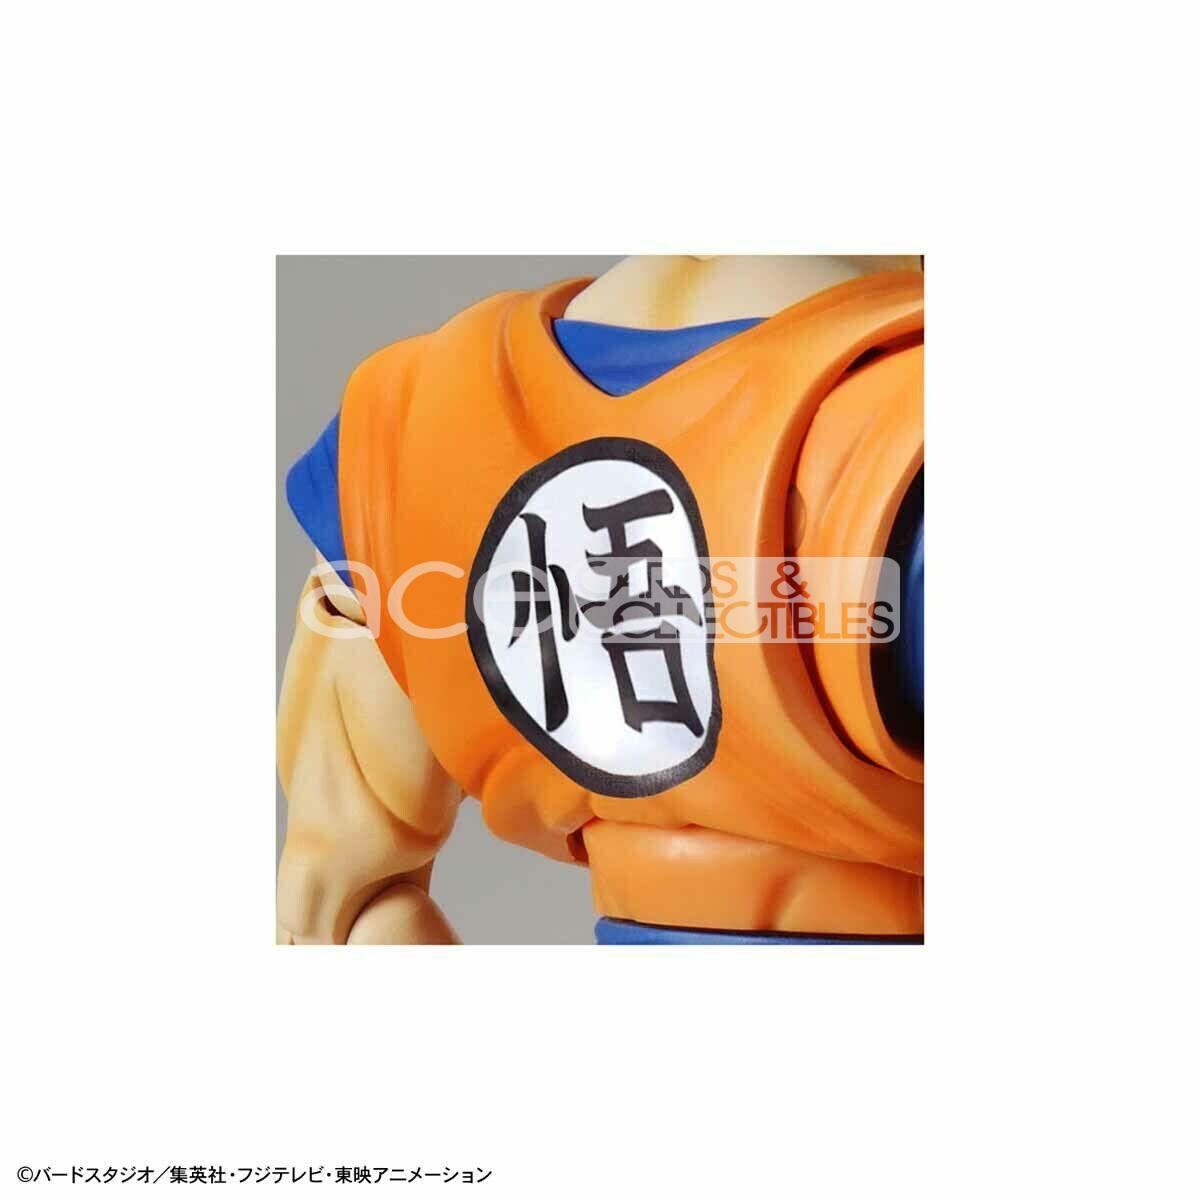 Dragon Ball Figure-rise Standard Super Saiyan God Super Saiyan Son Goku-Bandai-Ace Cards &amp; Collectibles